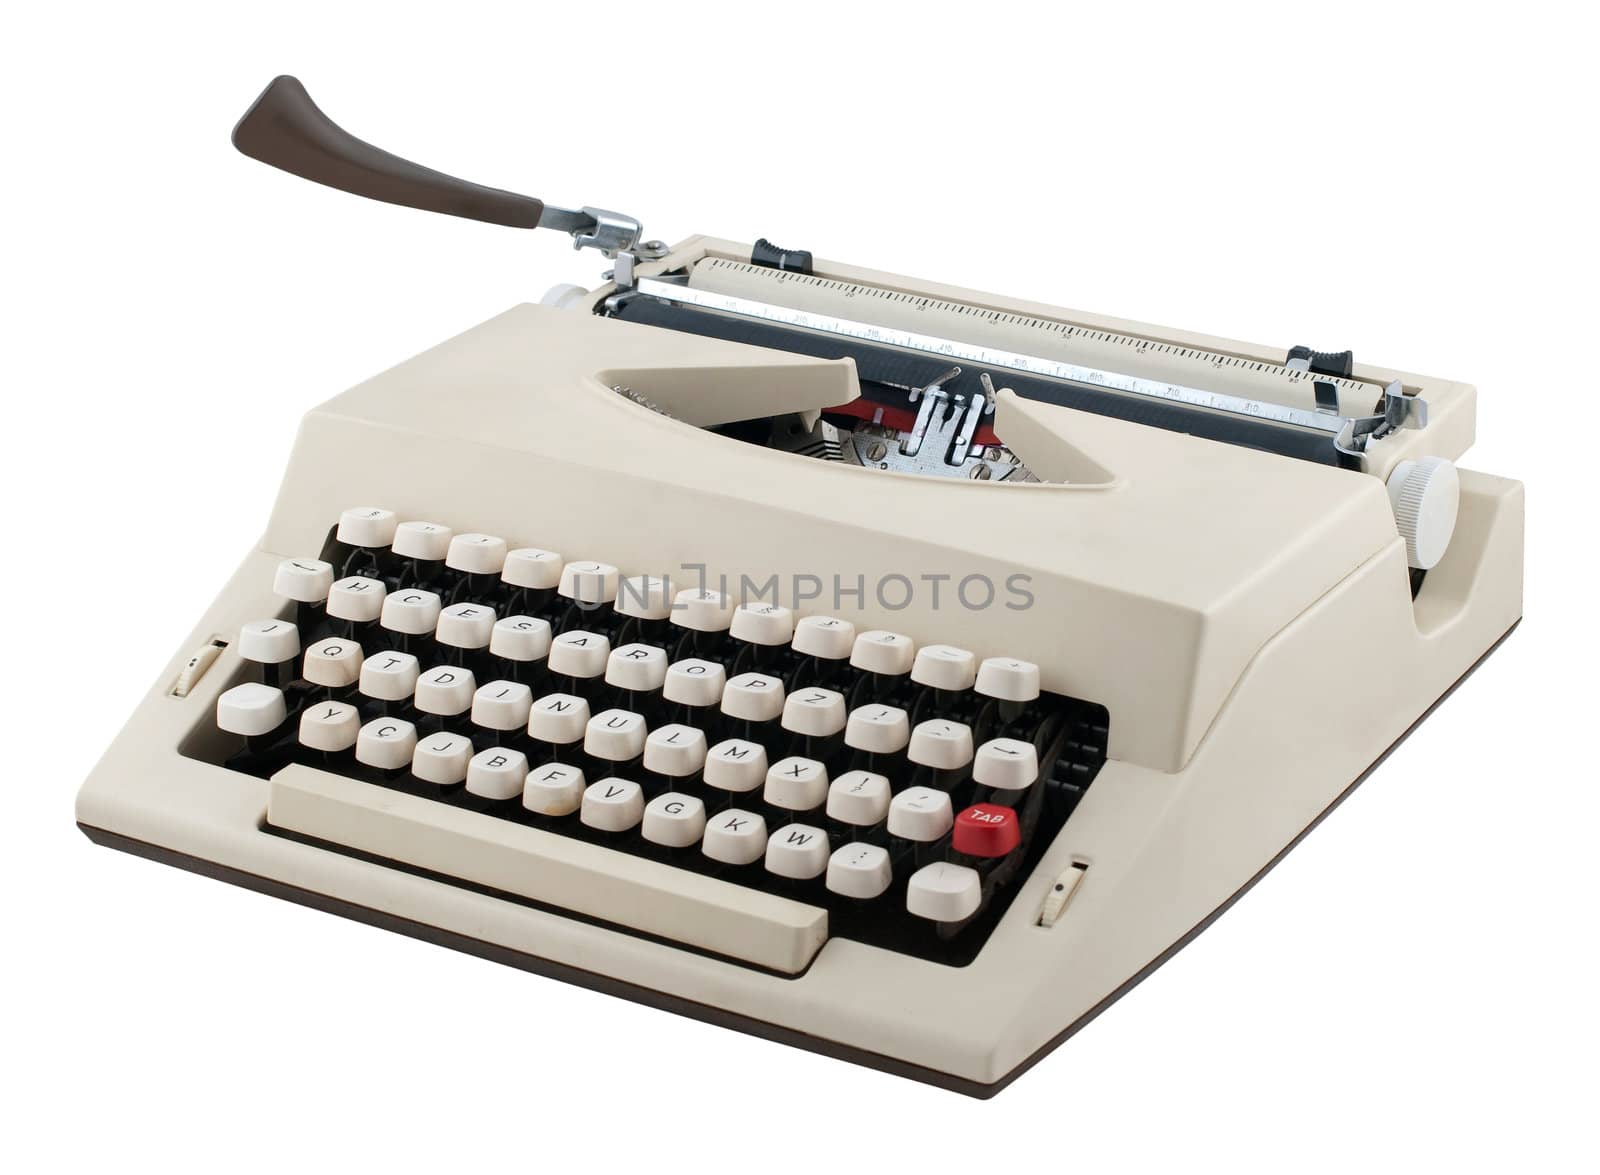 Portable typewriter isolated on white background.